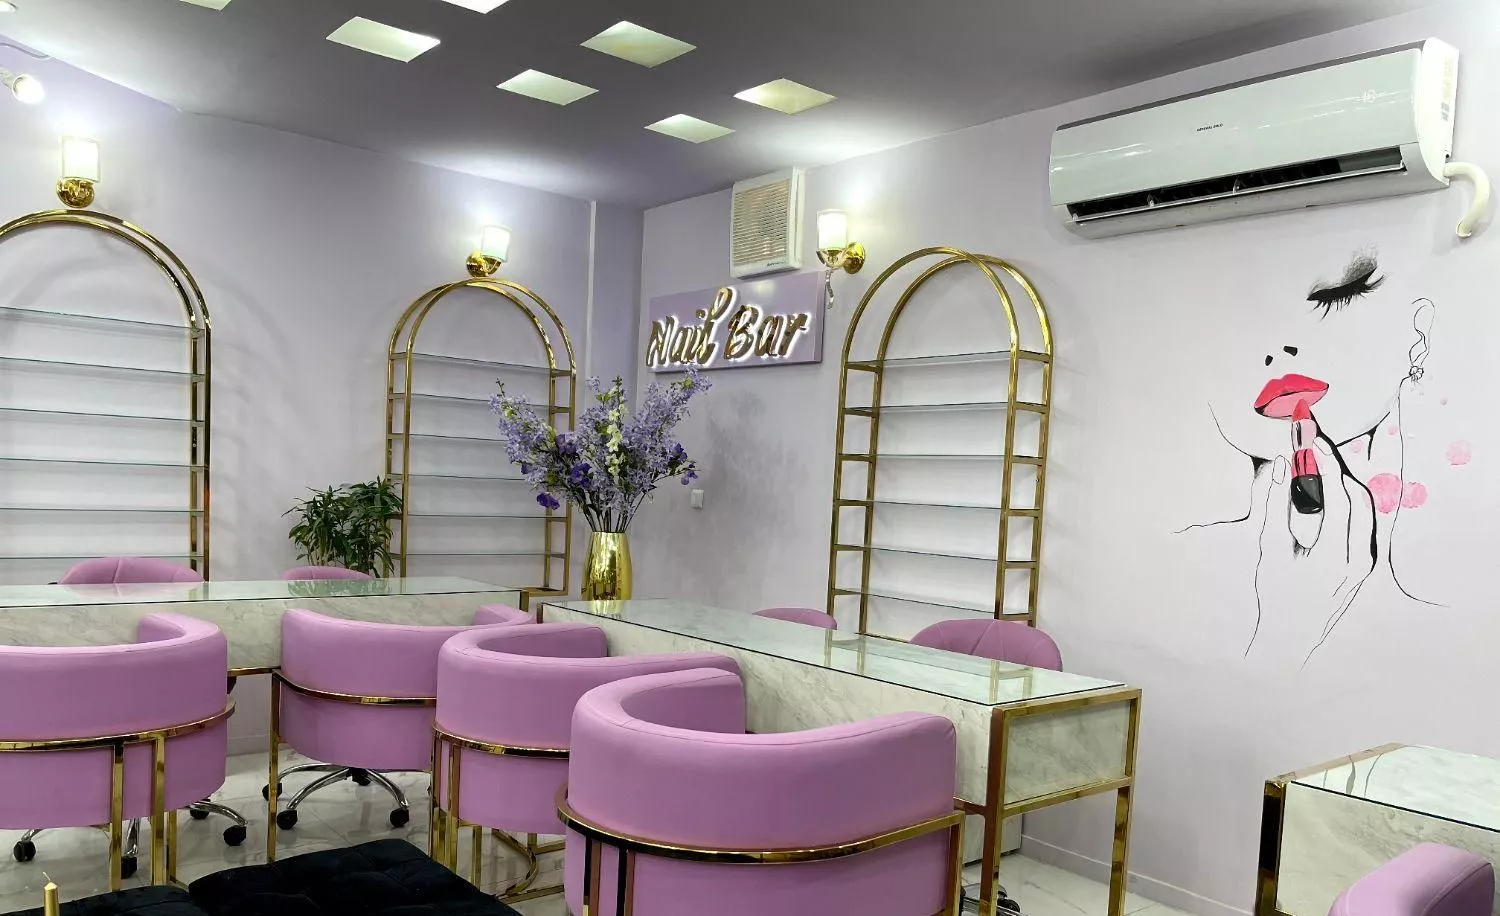 واگذاری سالن زیبایی پر مشتری - آرایشگاه زنانه گیشا